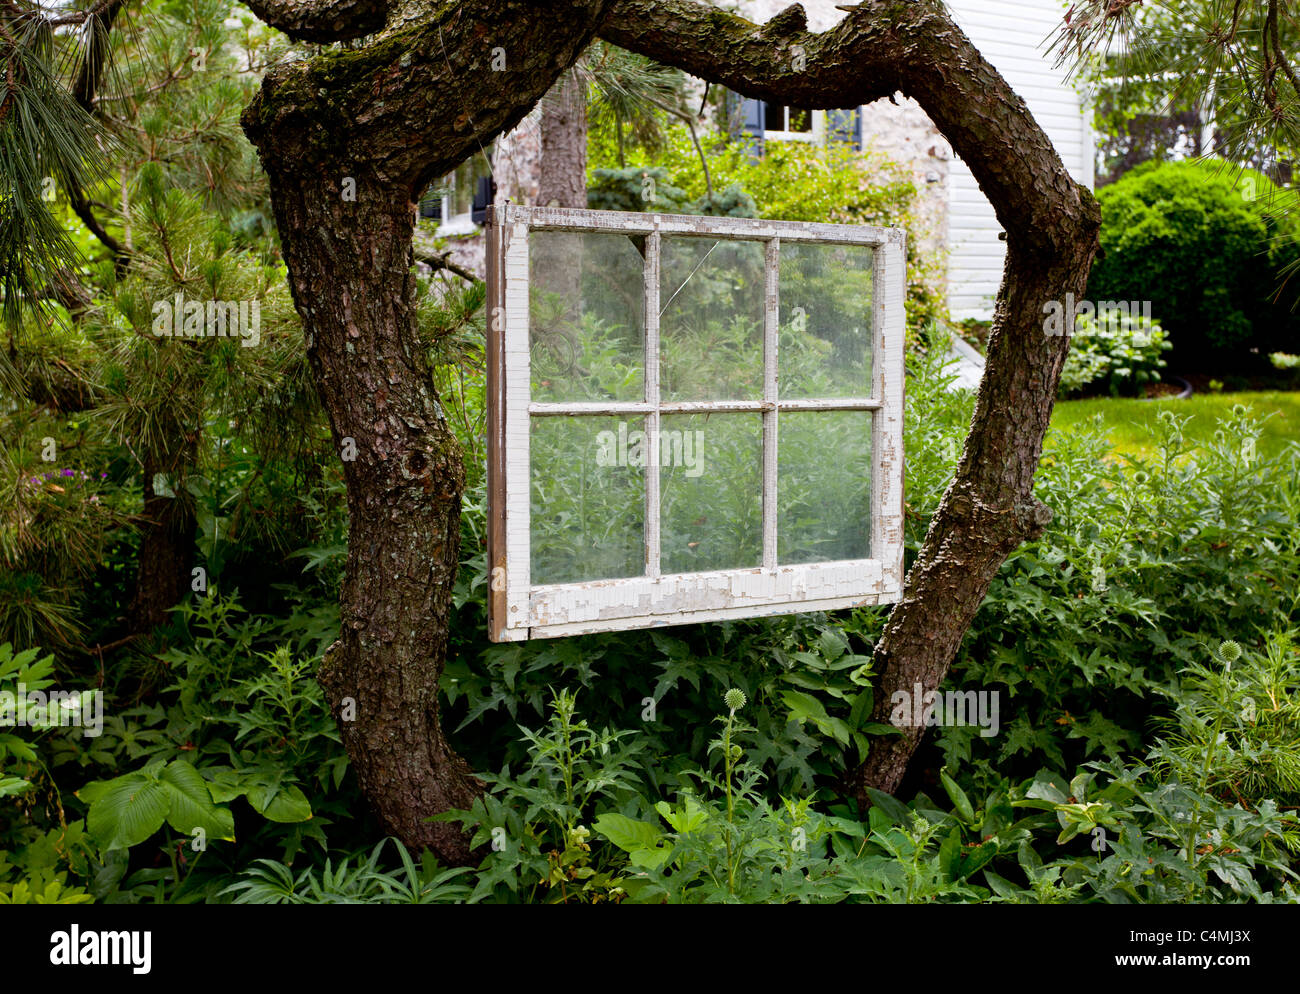 Vecchio bianco sul telaio di una finestra e sospesi tra tronchi di alberi in verde giardino verdeggiante inquadrare la scena Foto Stock